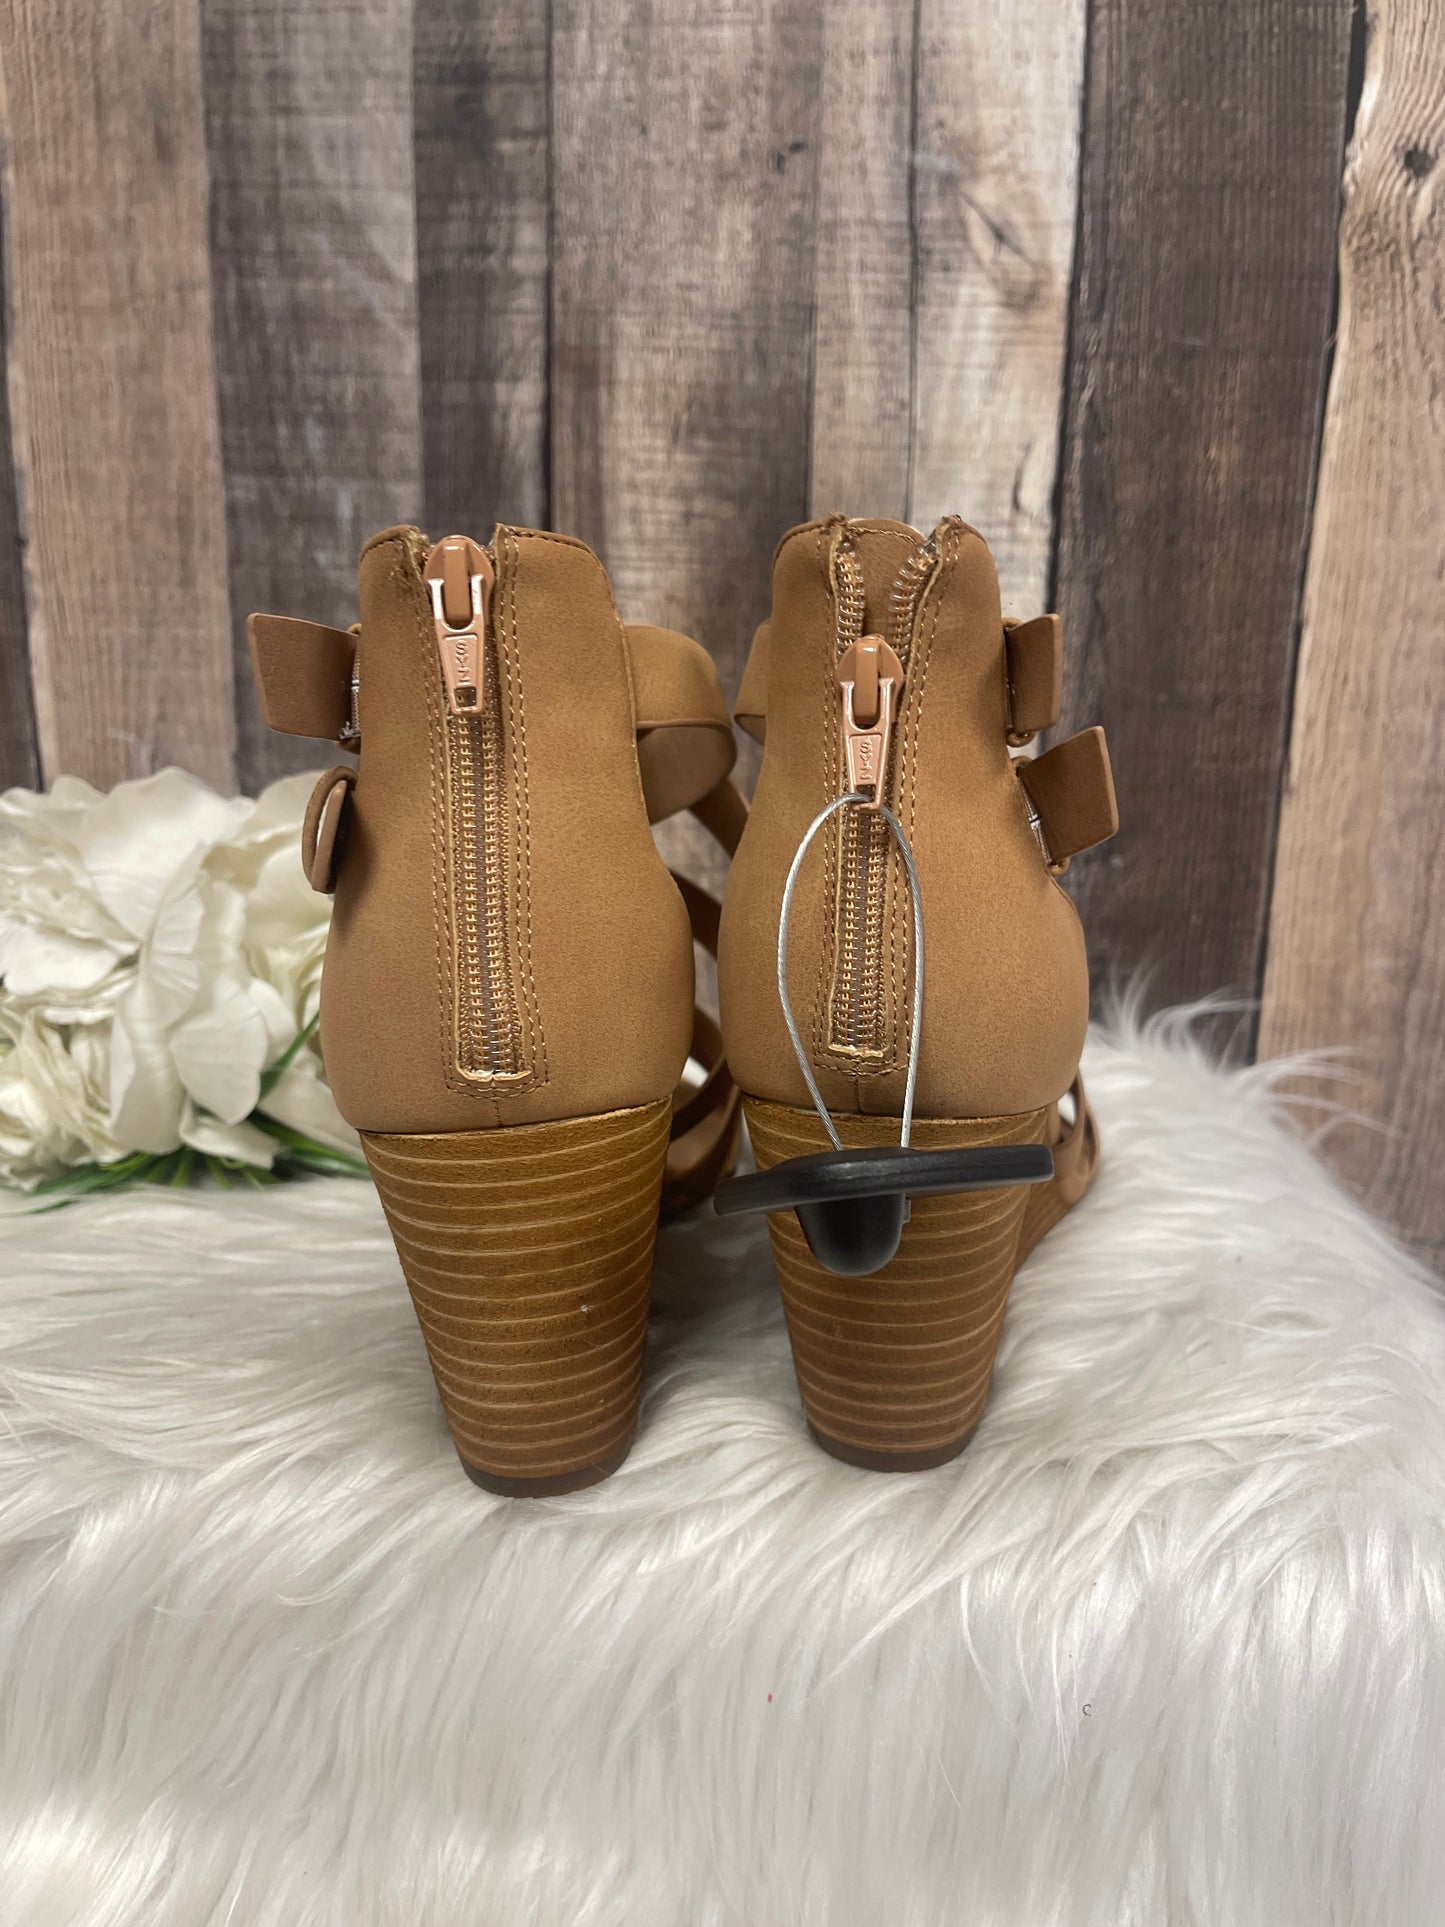 Sandals Heels Wedge By Crown Vintage  Size: 9